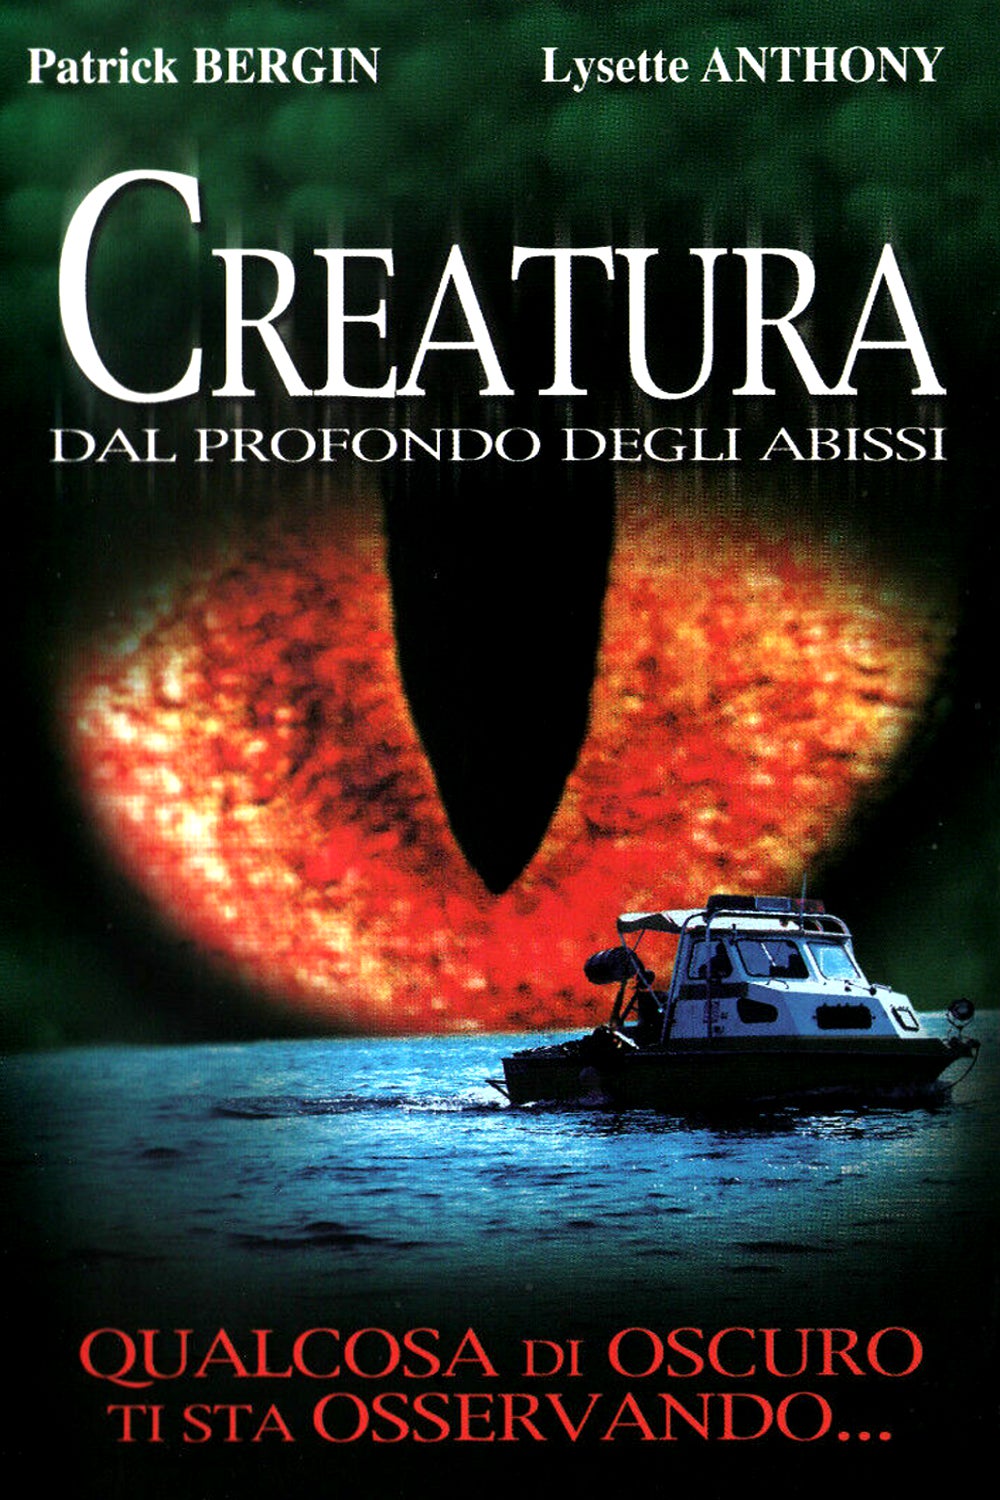 Creatura – Dal profondo degli abissi (2002)